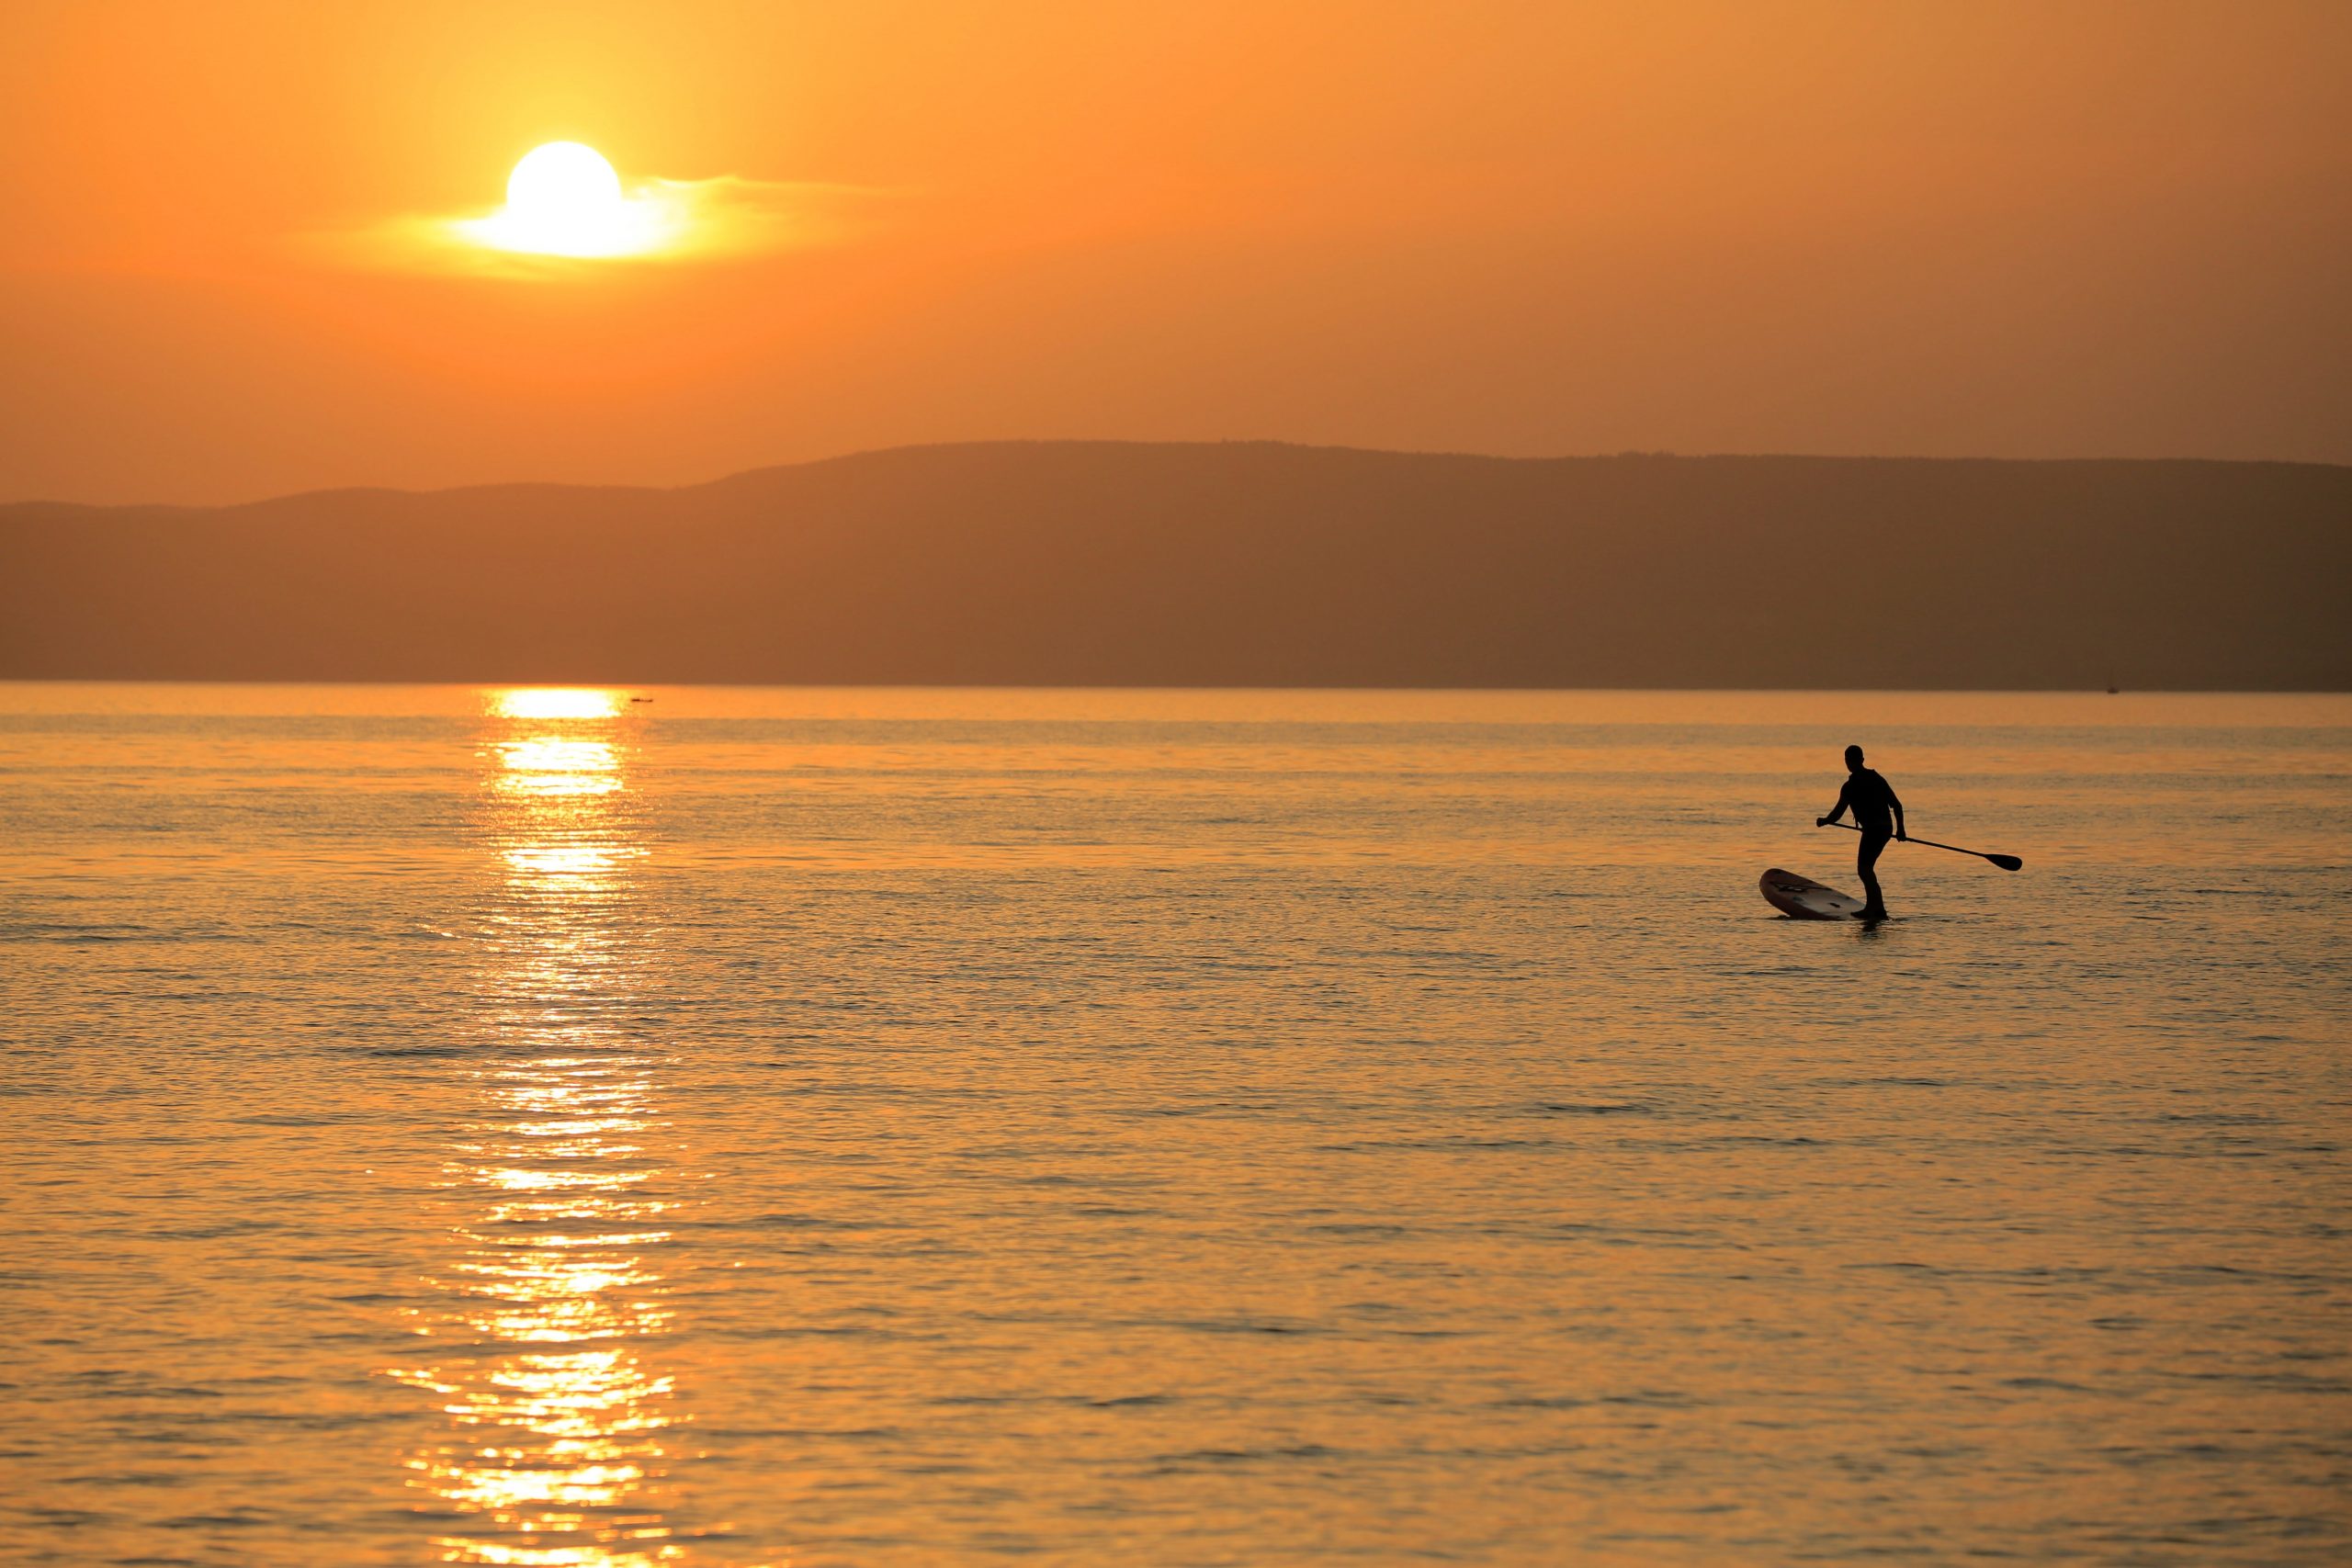 Lake Balaton May Dry Up within Decades, Scientist warns